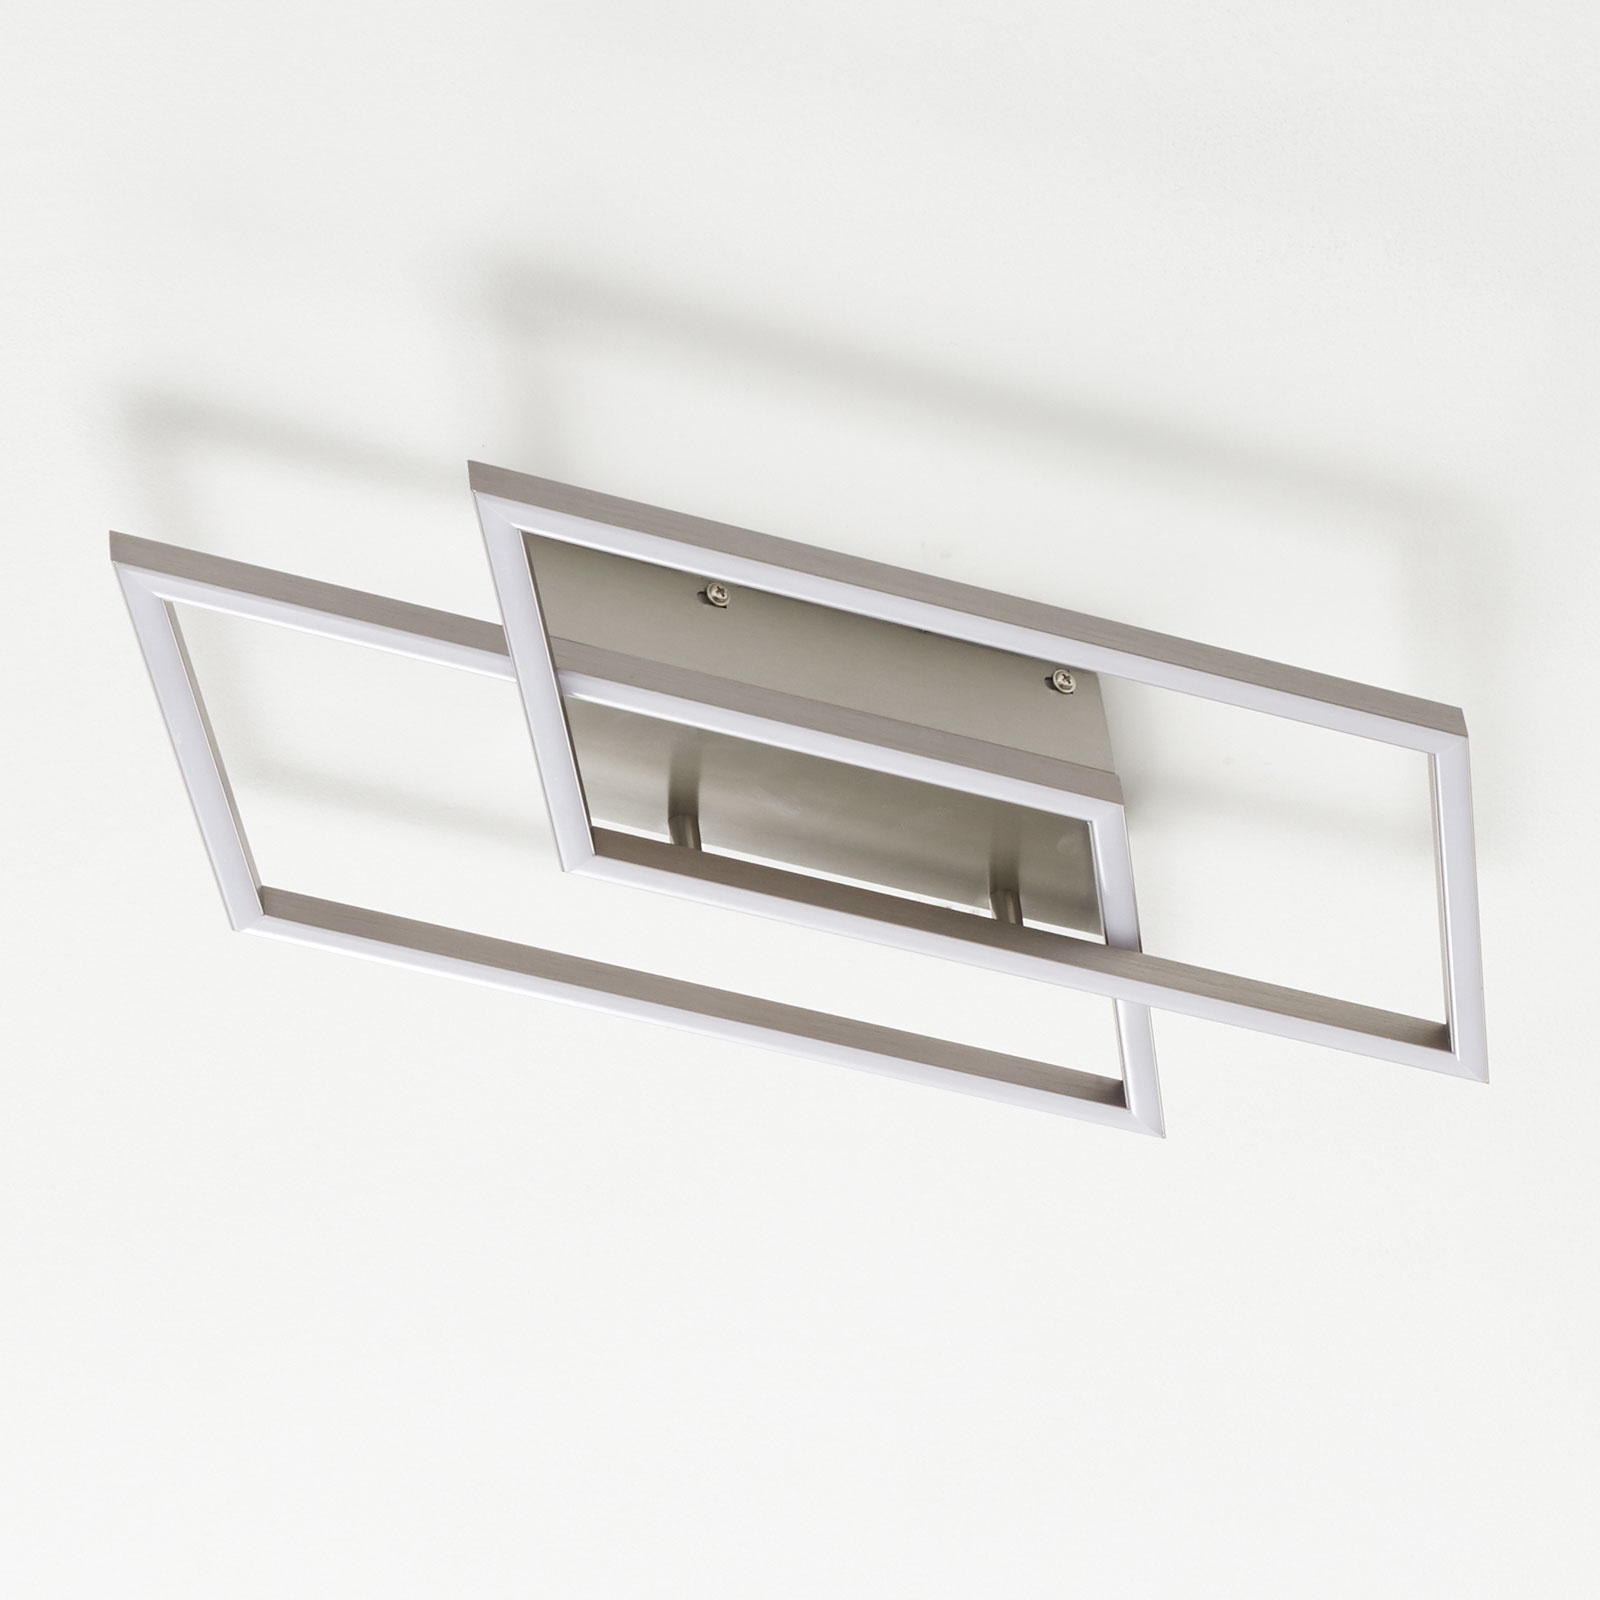 Dviejų lempučių LED lubinis šviestuvas "Inigo" ilgis 53,8 cm